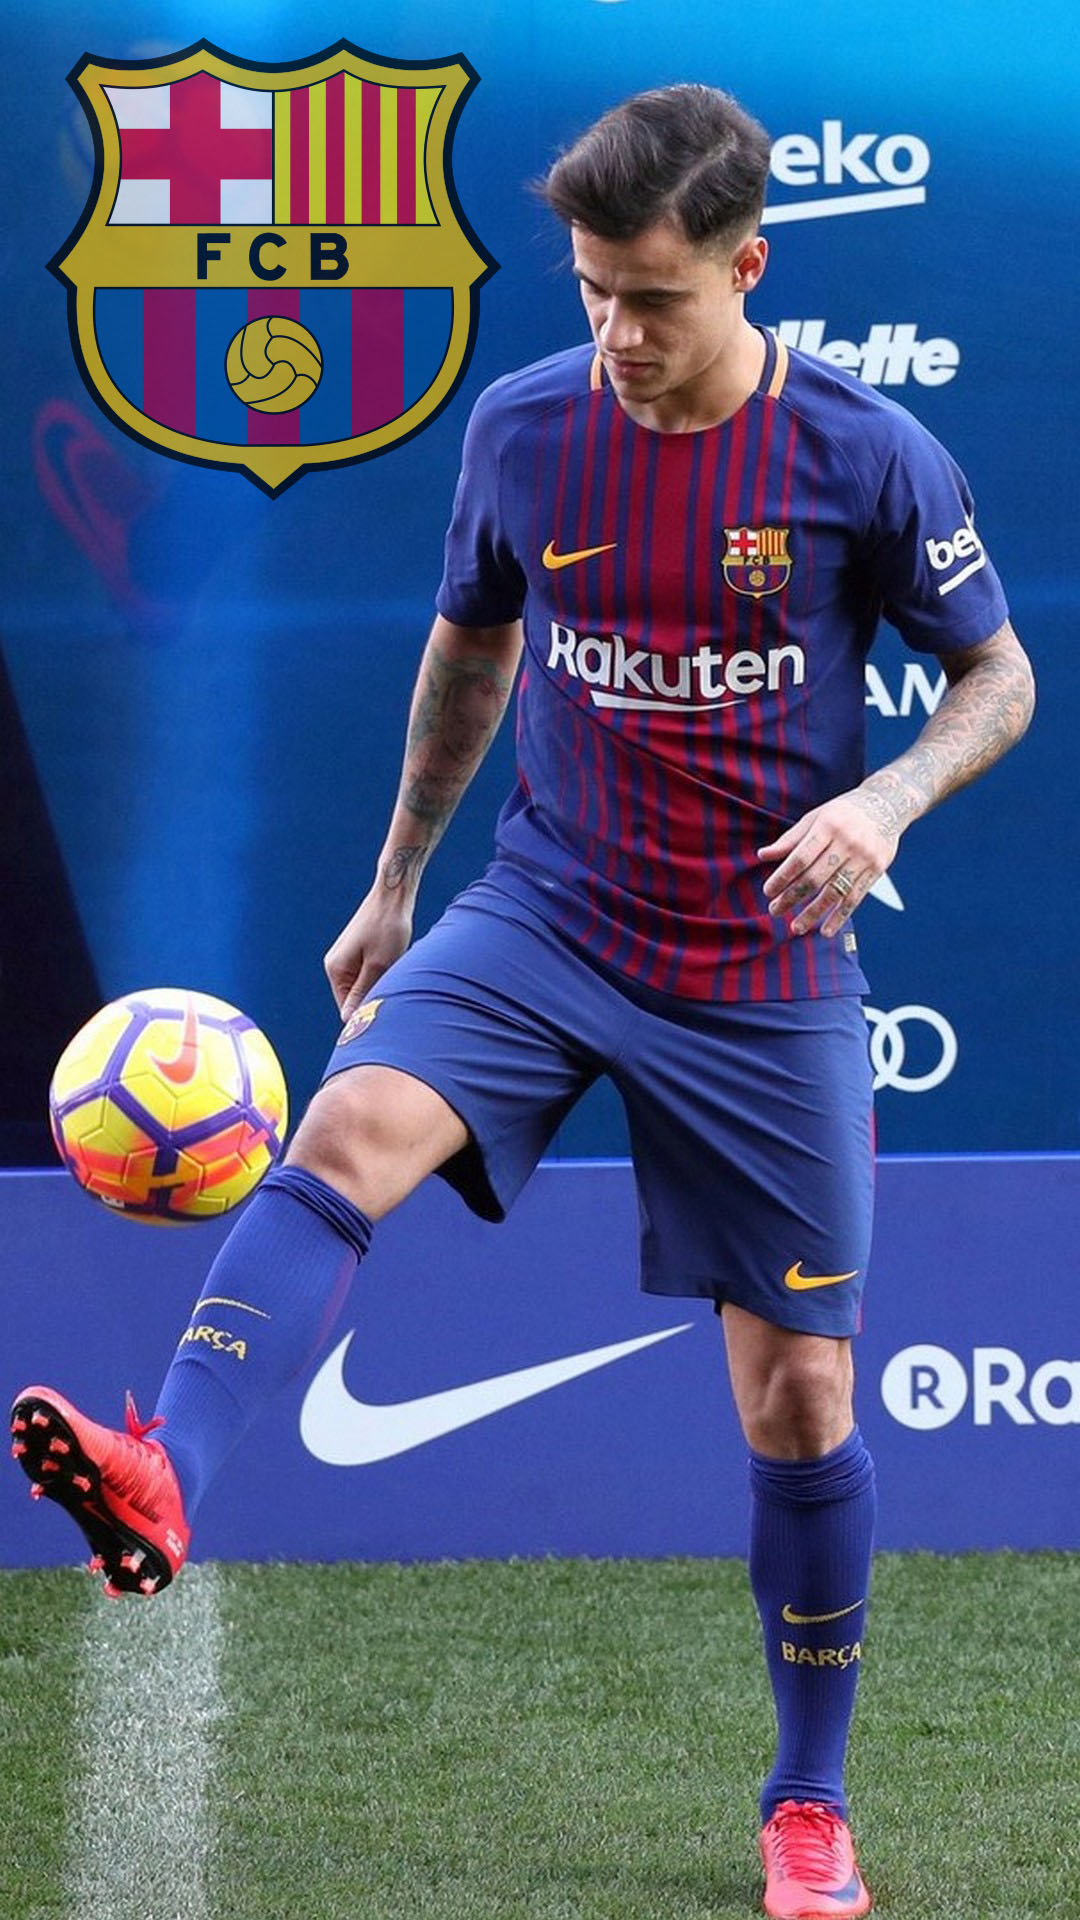 fondo de pantalla de fc barcelona para android,deportes,jugador de fútbol,jugador de fútbol,jugador,fútbol